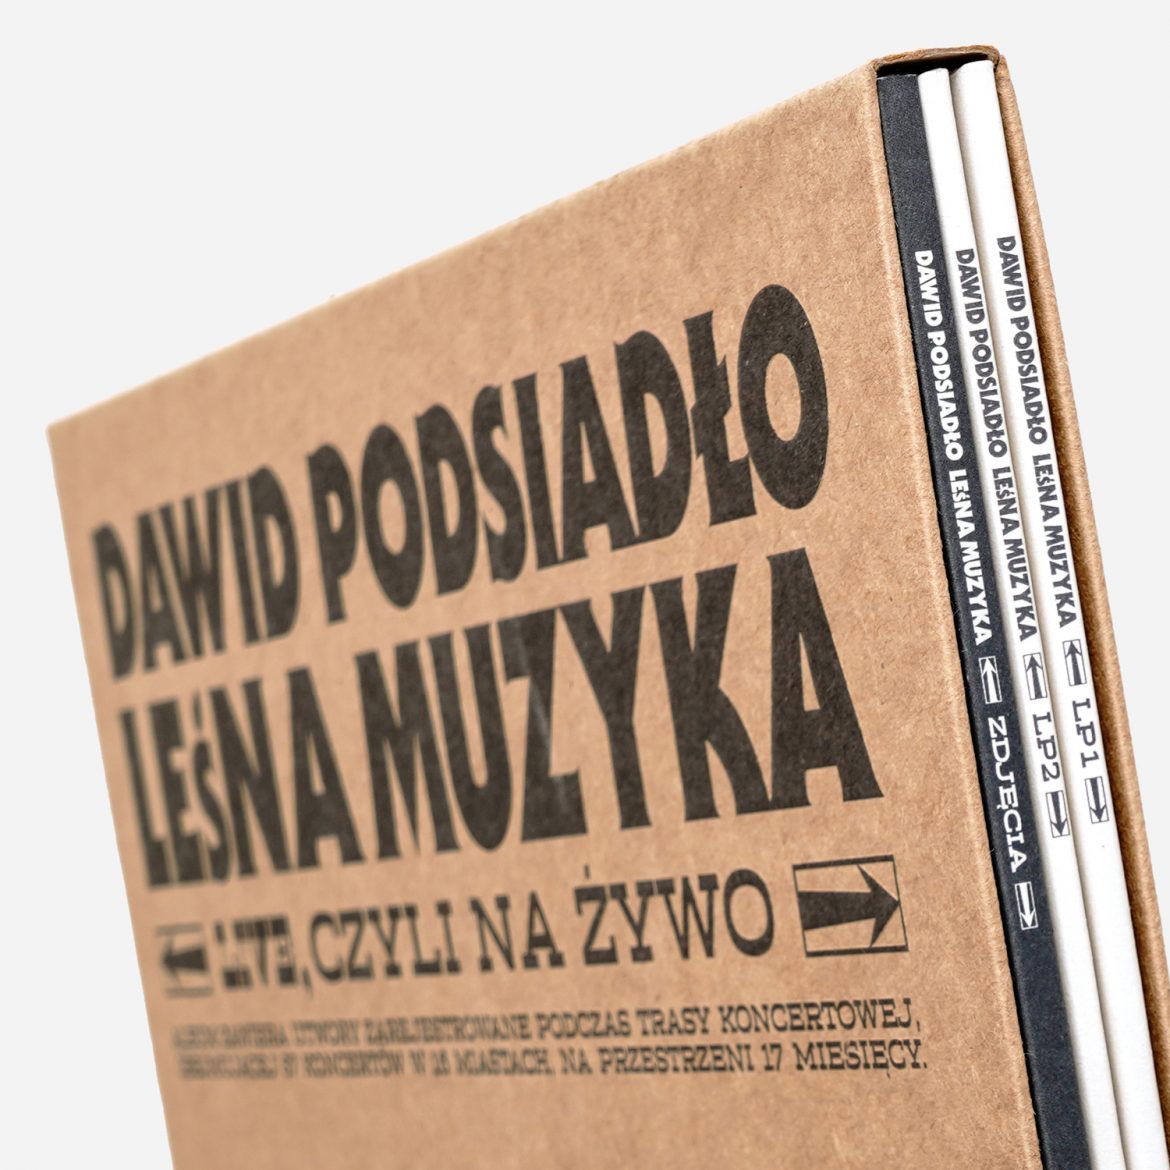 „Leśna Muzyka” Dawida Podsiadło platynowa. Z tej okazji Dawid przygotował coś wyjątkowego